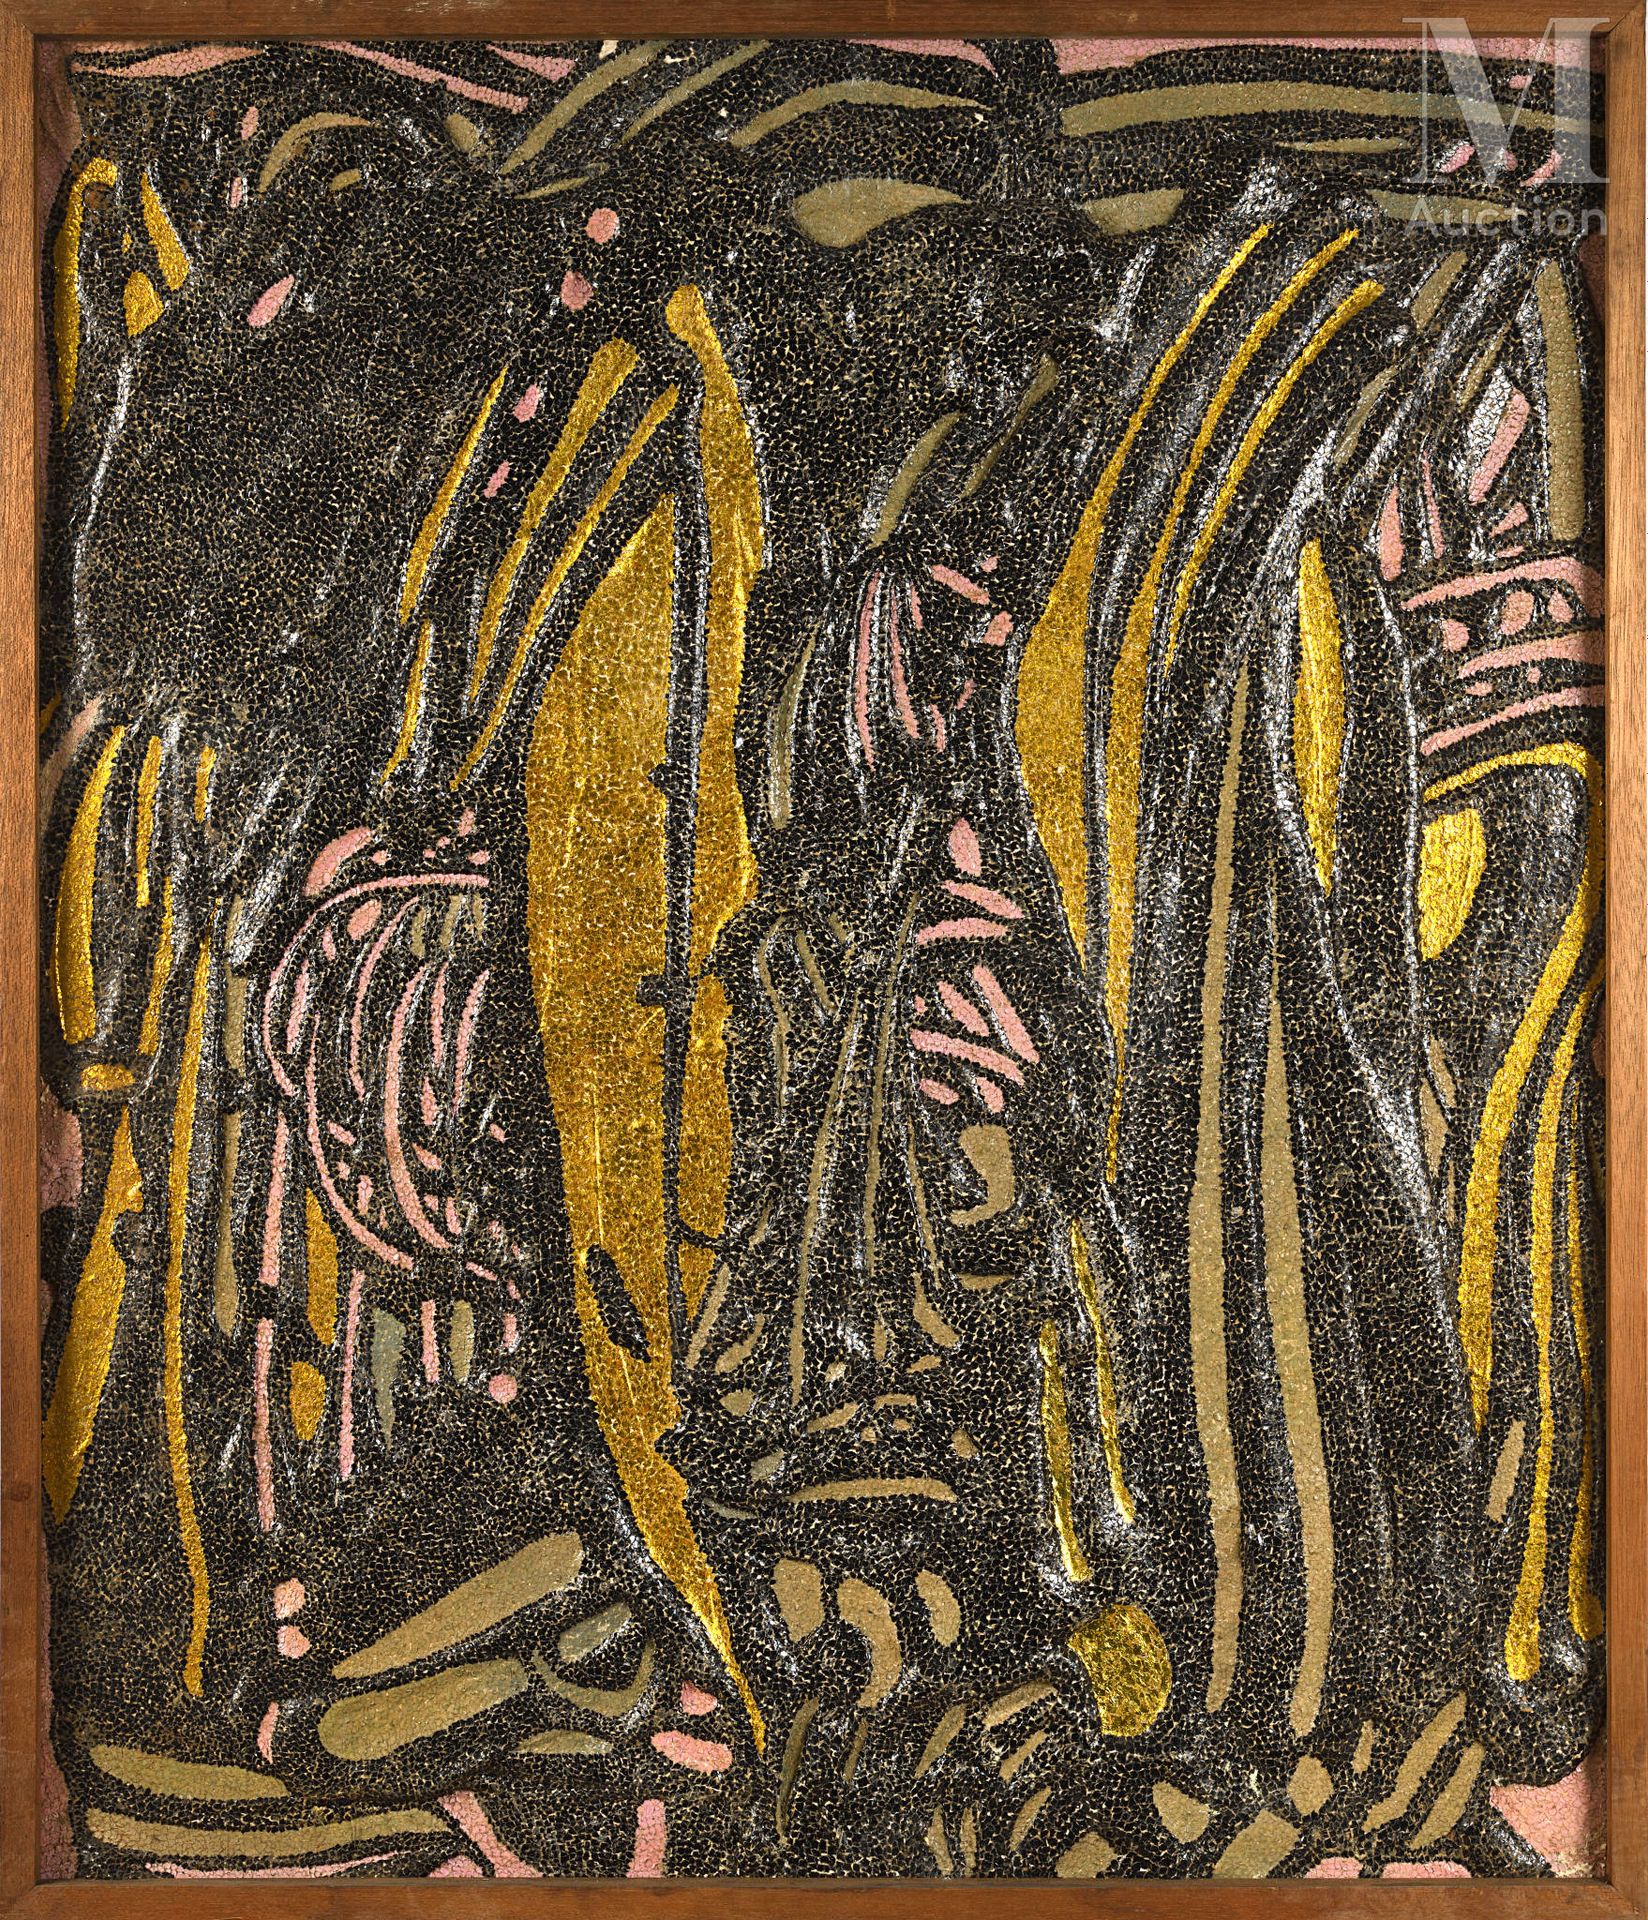 Toshio ARAI (né en 1929) 无题》，1961年

面板上的树脂、金漆和纸质拼贴画，背面有签名和日期。背面印有都灵国际美学研究中心的标签。
&hellip;